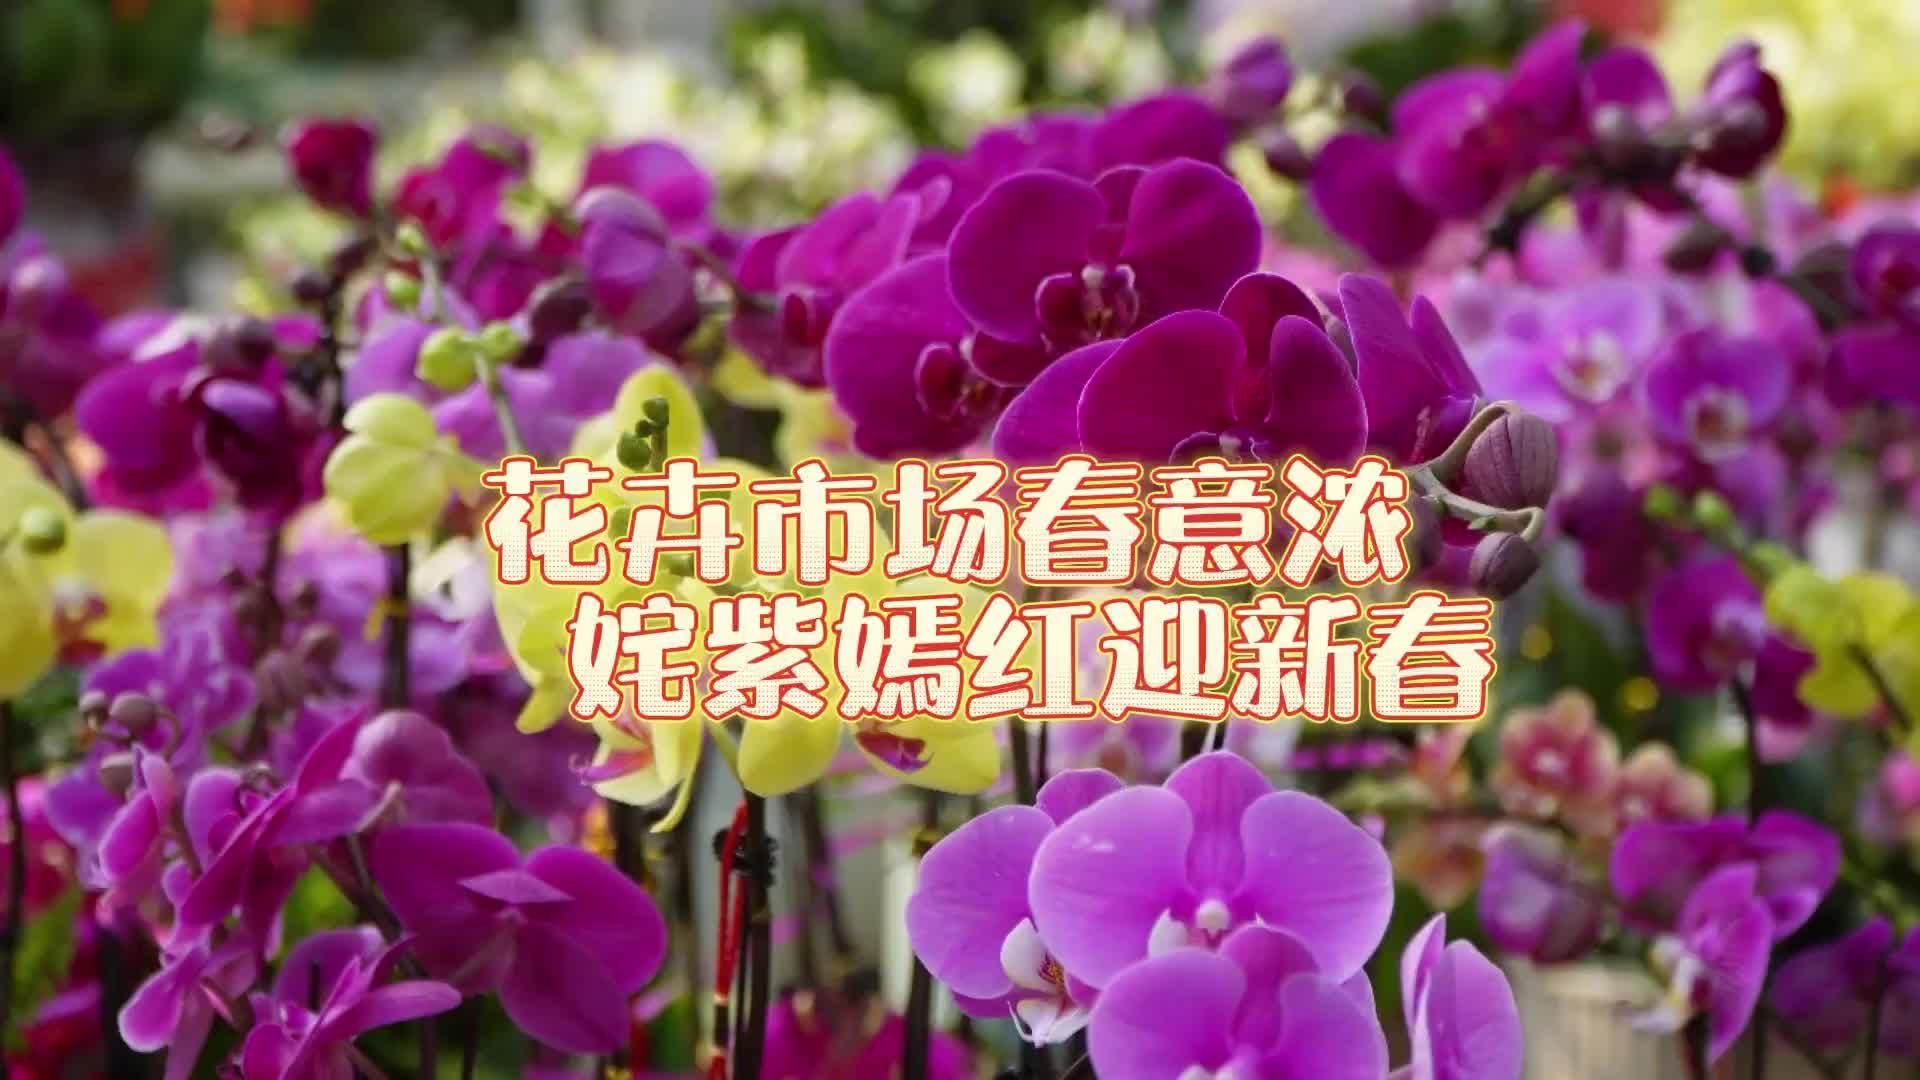 更济宁 | 花卉市场春意浓 姹紫嫣红迎新春